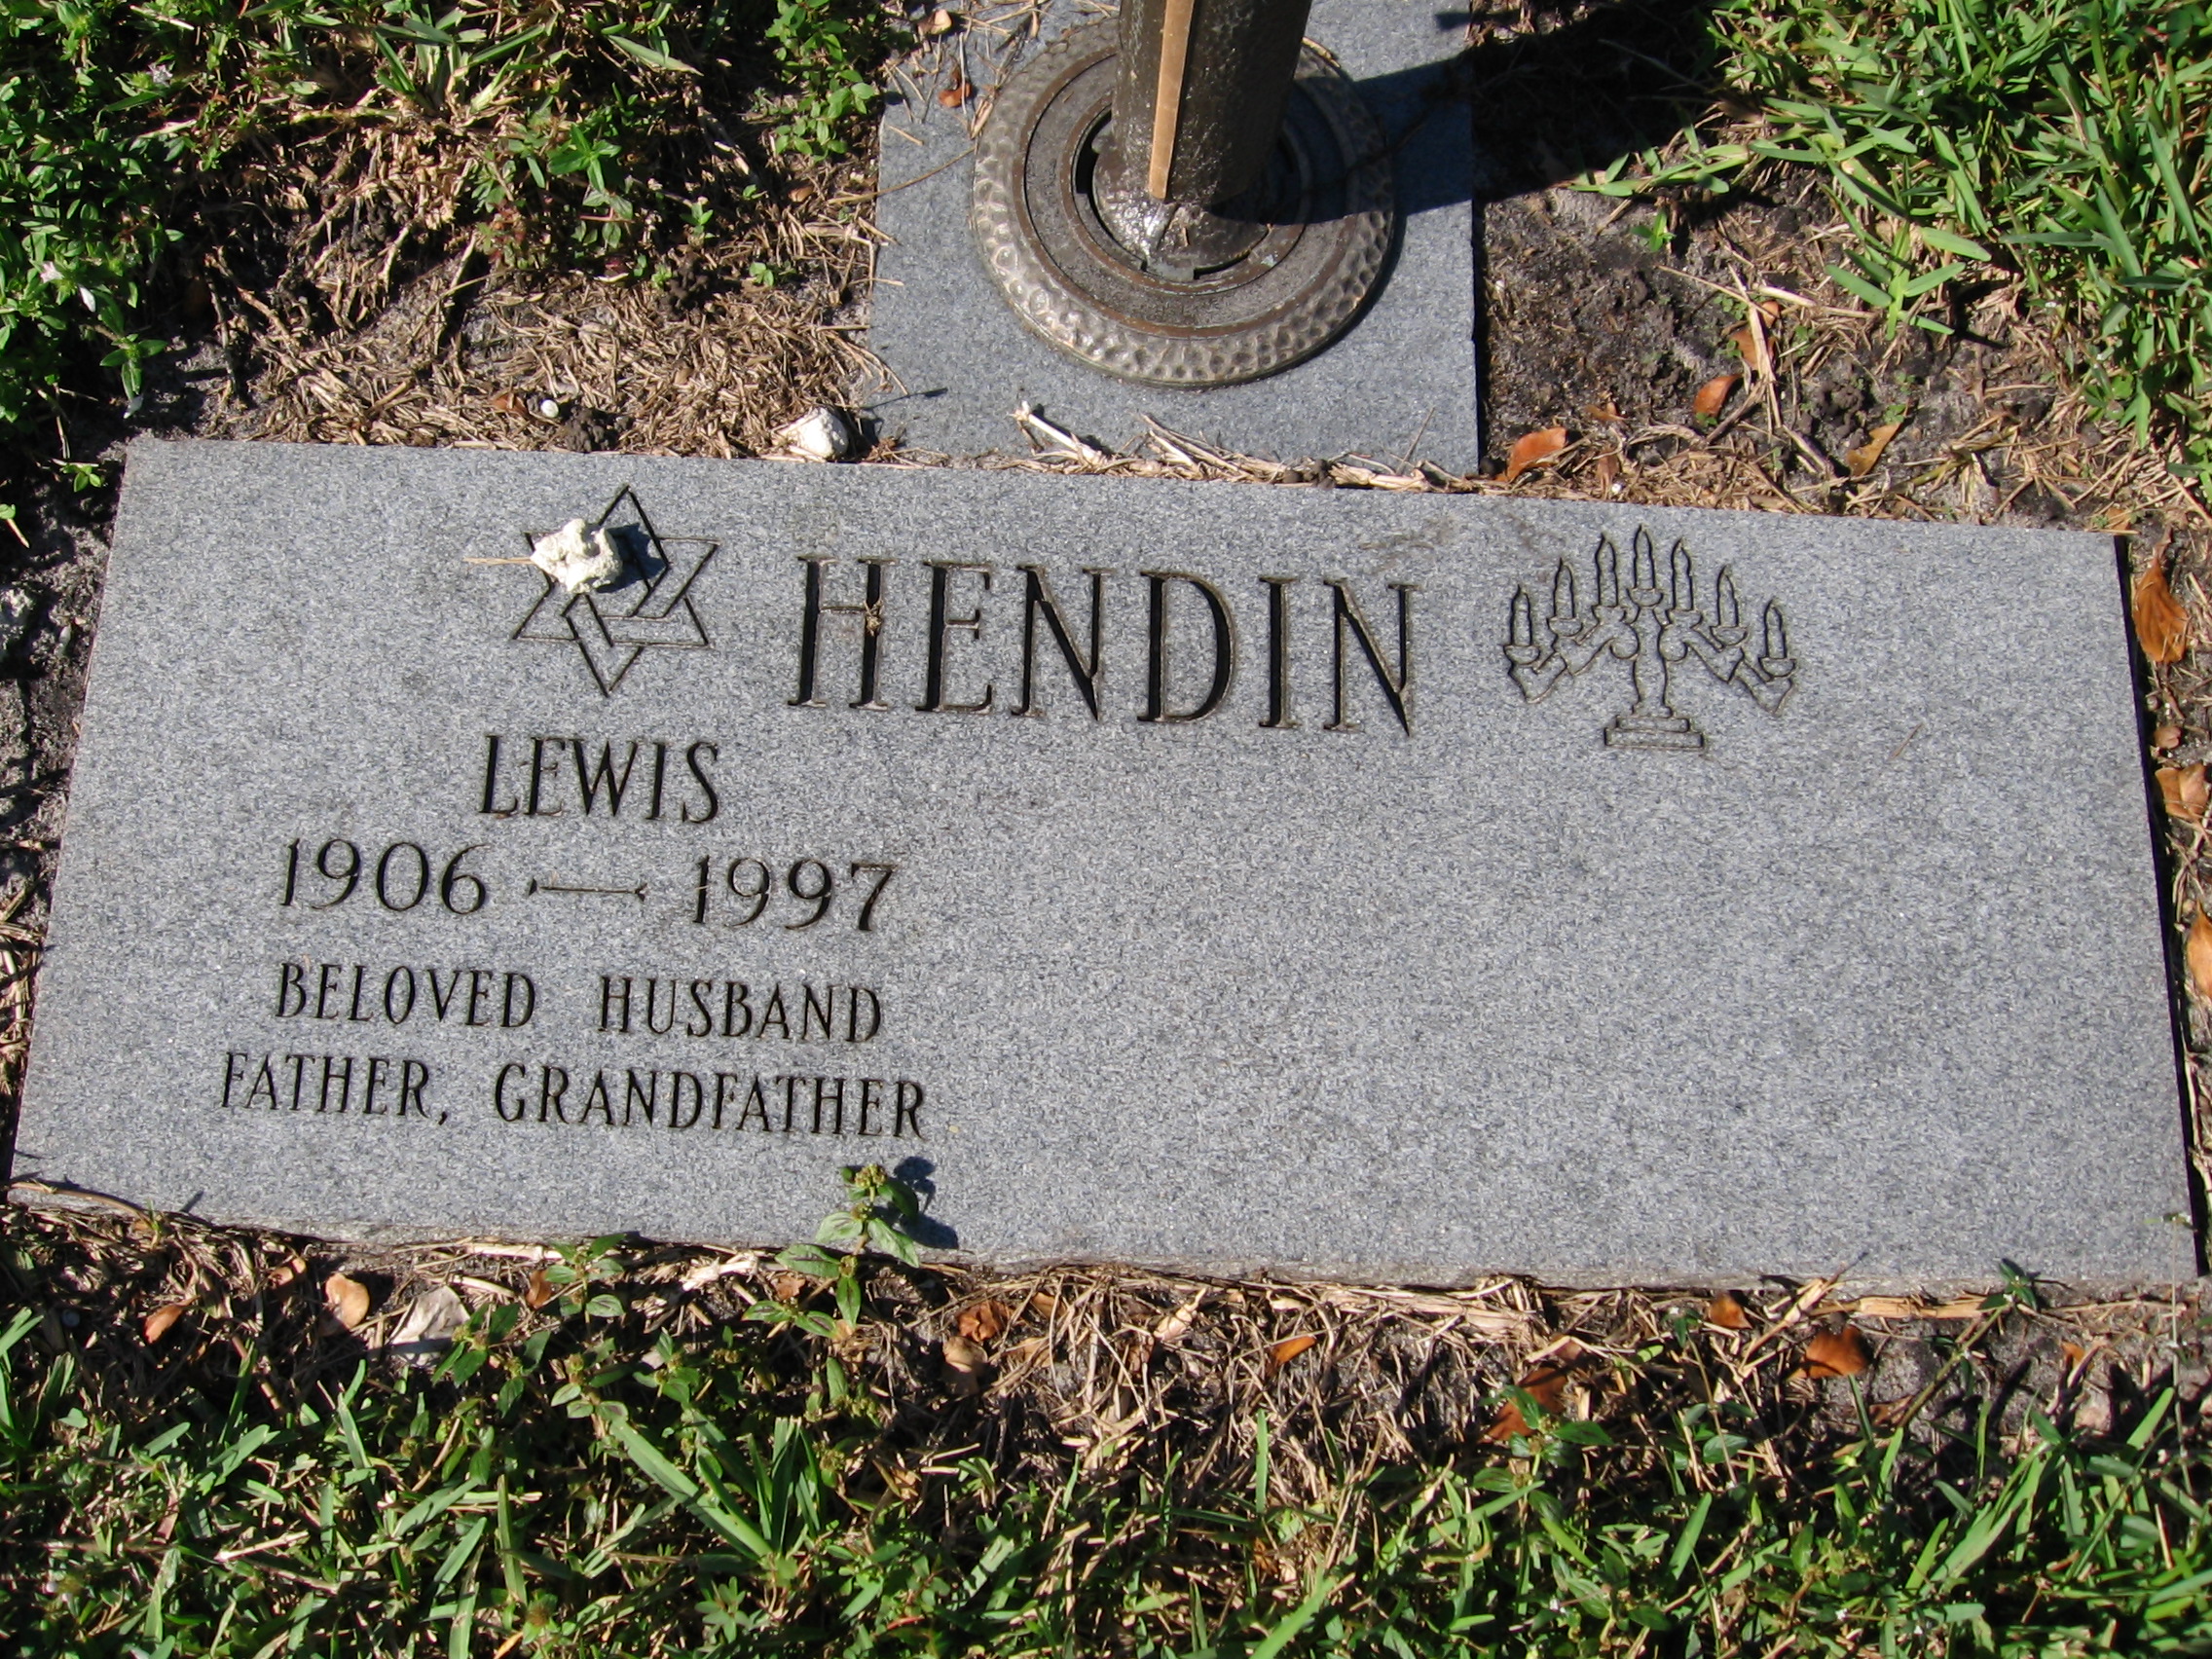 Lewis Hendin